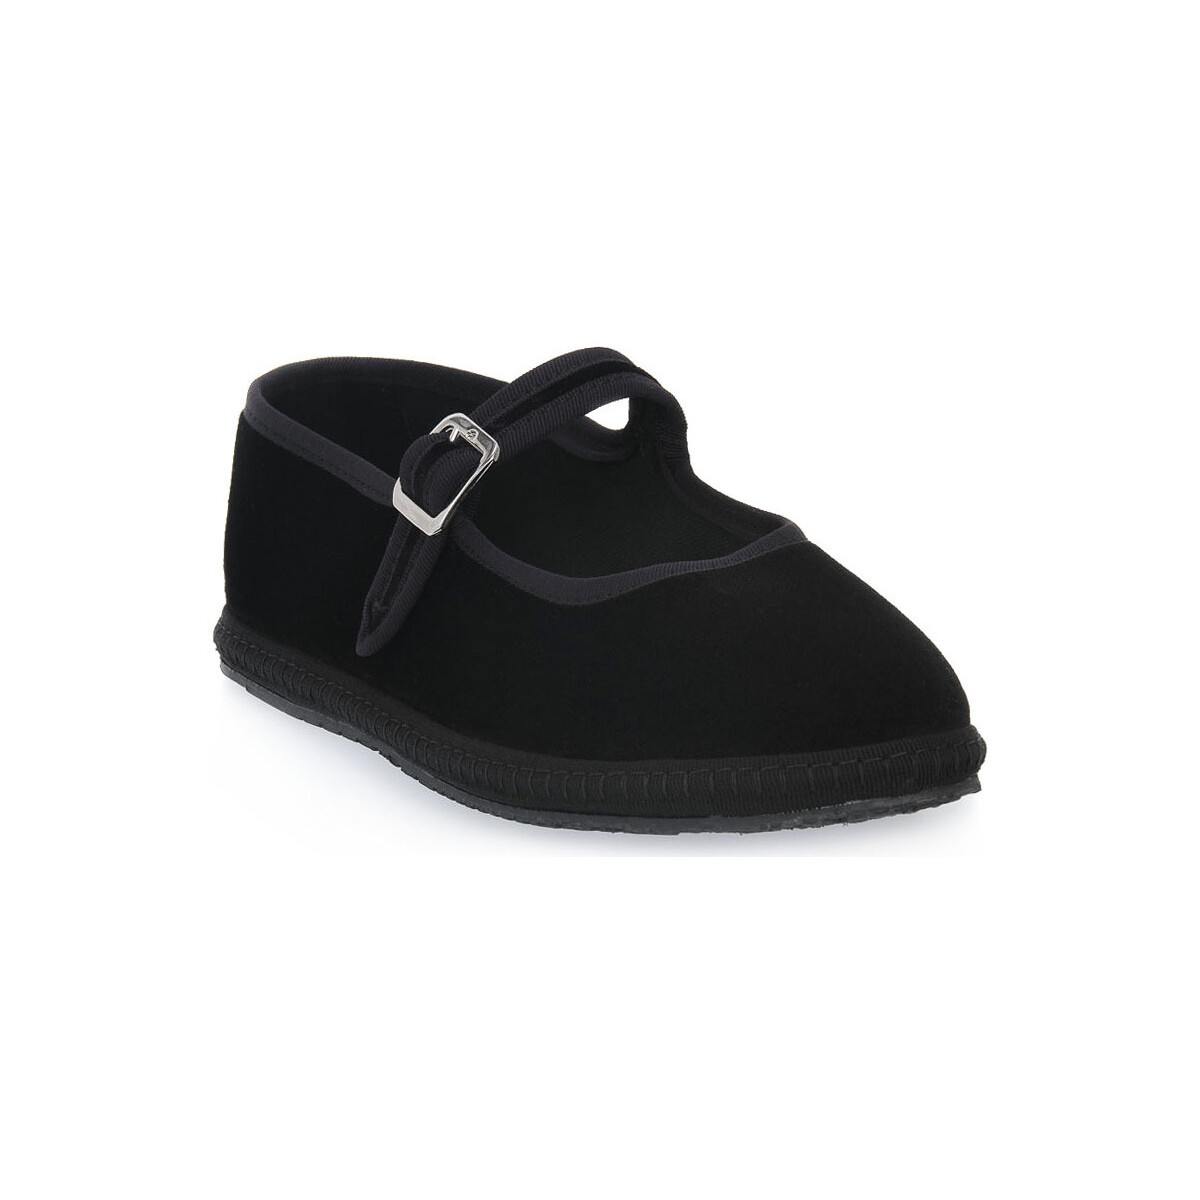 Pantofi Femei Papuci de casă Priv Lab NERO VELLUTO Negru